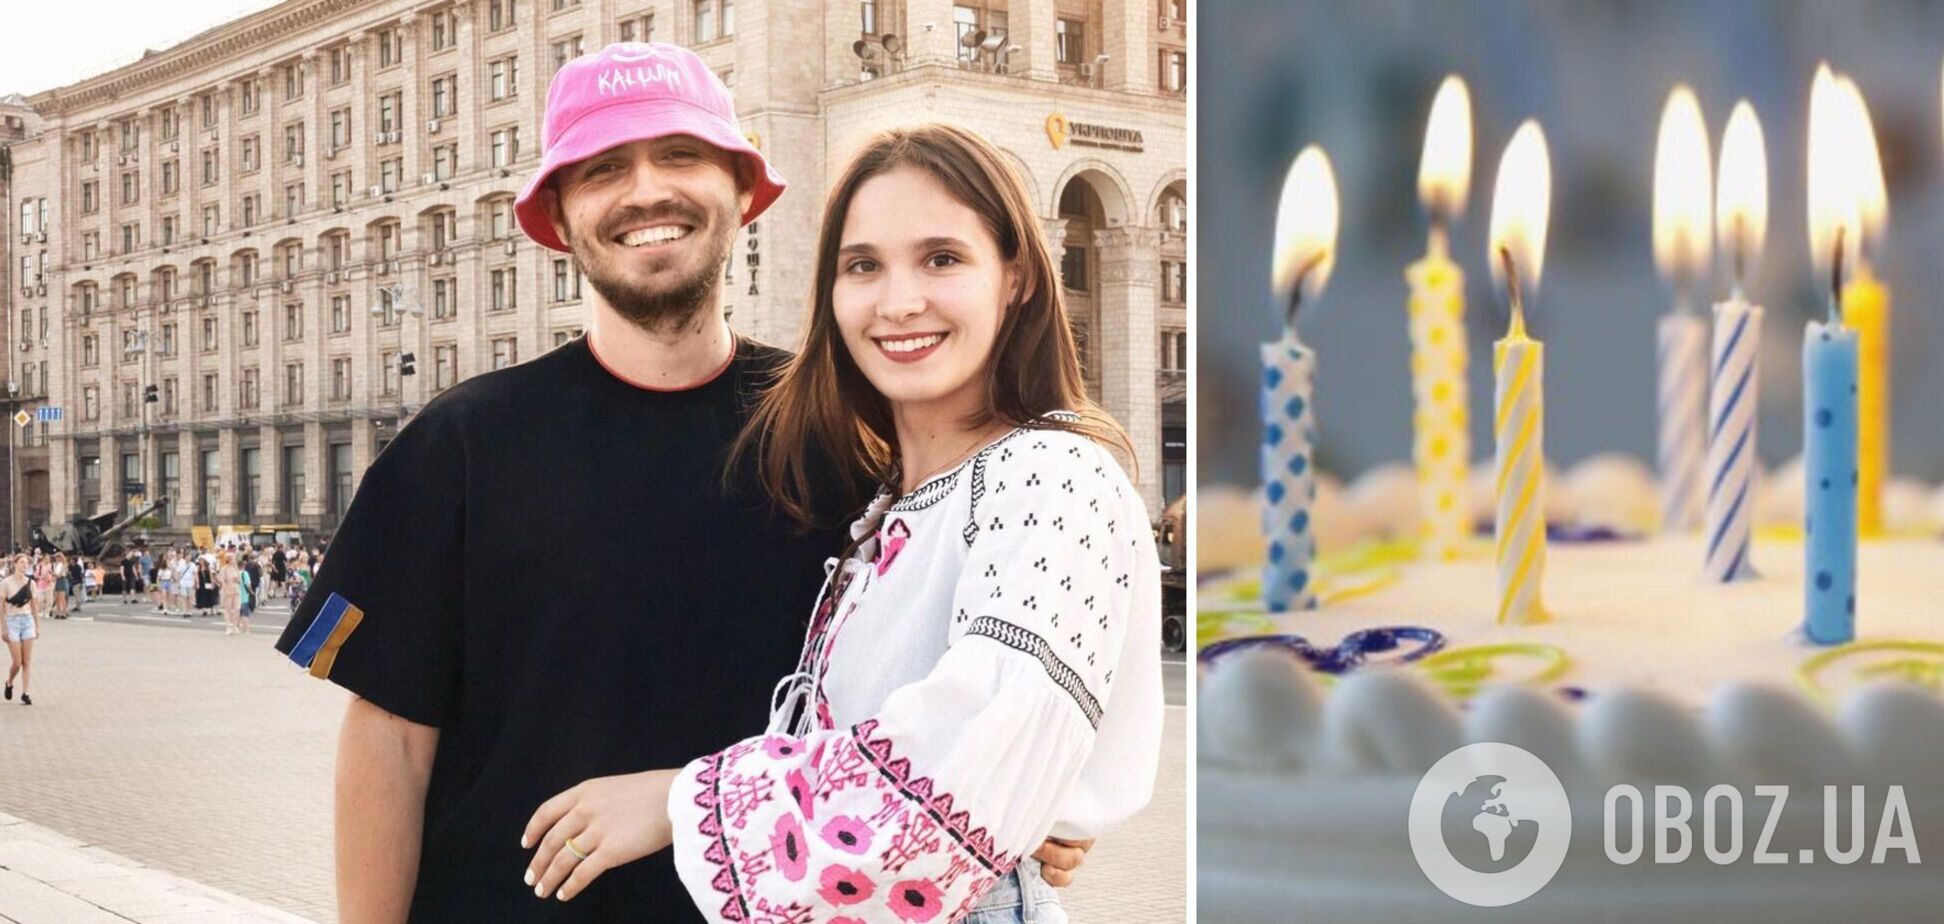 'Понял, что это судьба': Олег Псюк трогательно поздравил свою девушку с днем рождения